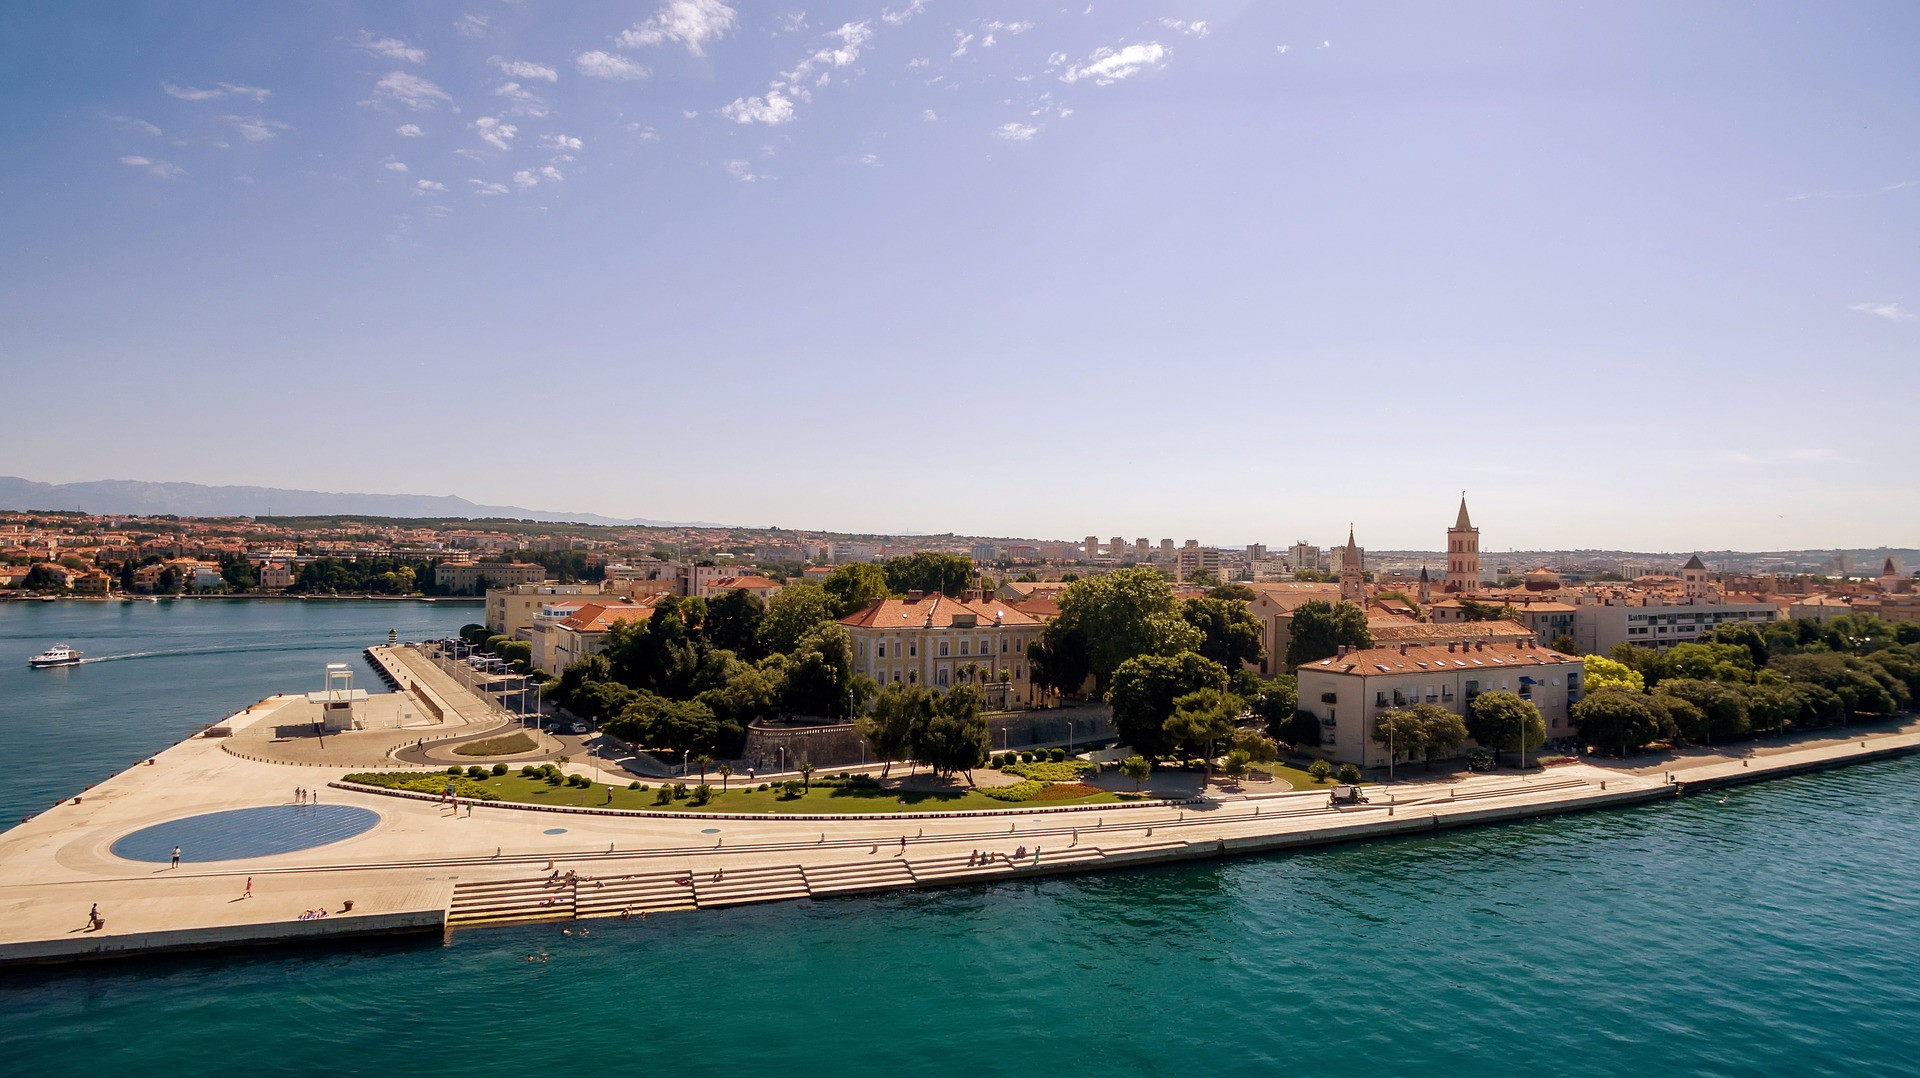 Turistické zaujímavosti: Morský organ a Pozdrav slnku v Zadare
Kultúrne akcie: Kniežací palác - nové kultúrne centrum Zadaru, po obnove otvorené vo februári 2017